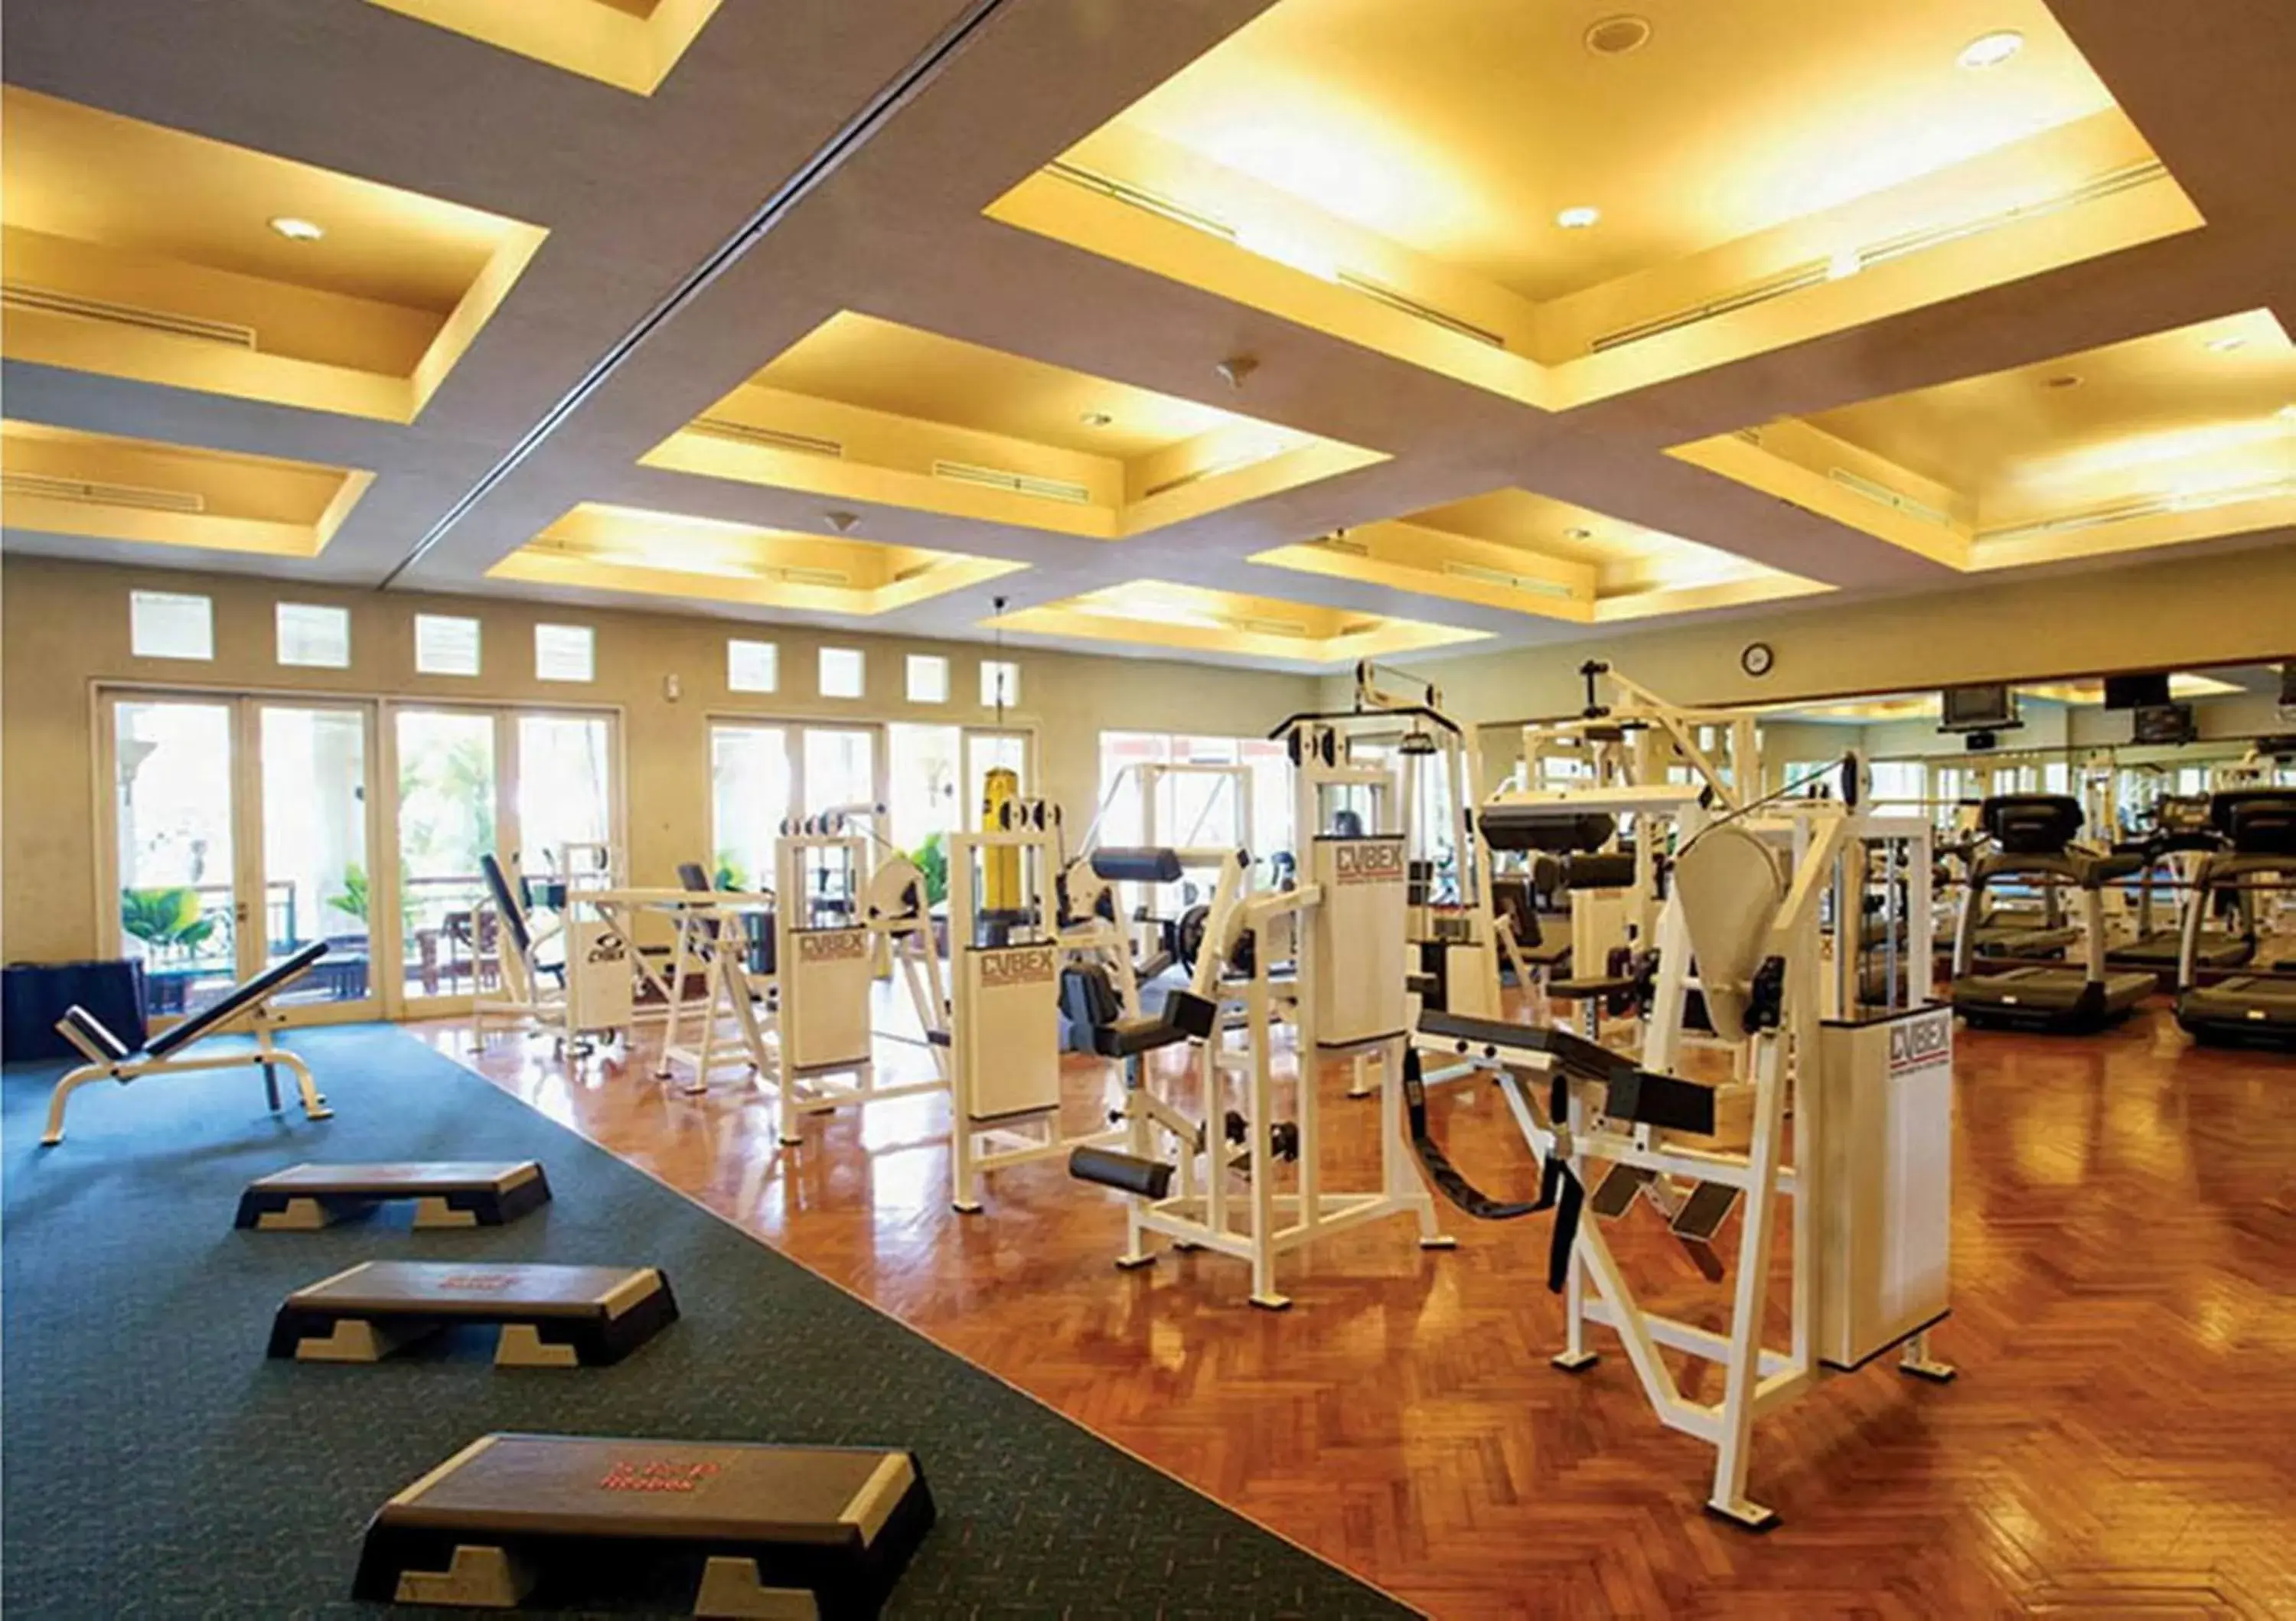 Fitness centre/facilities, Fitness Center/Facilities in R Hotel Rancamaya